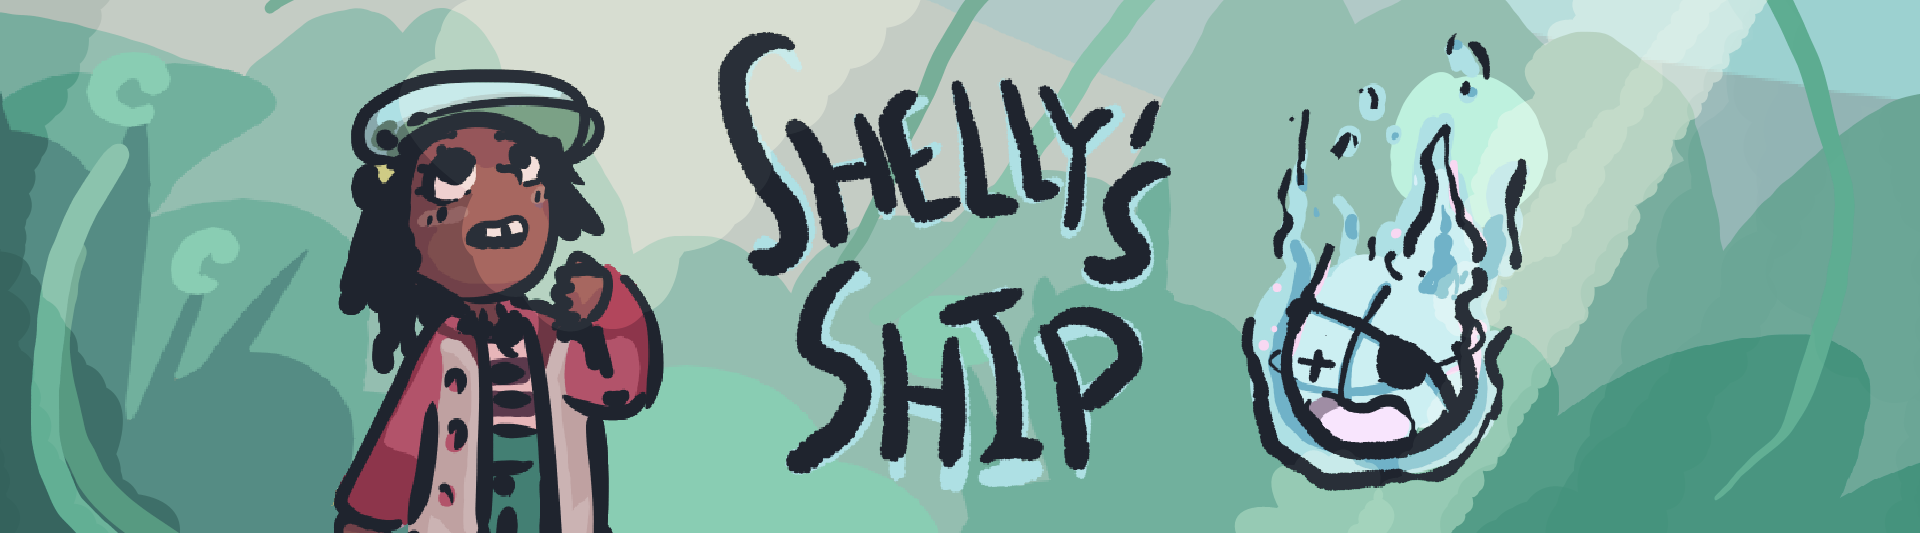 Shelly's Ship